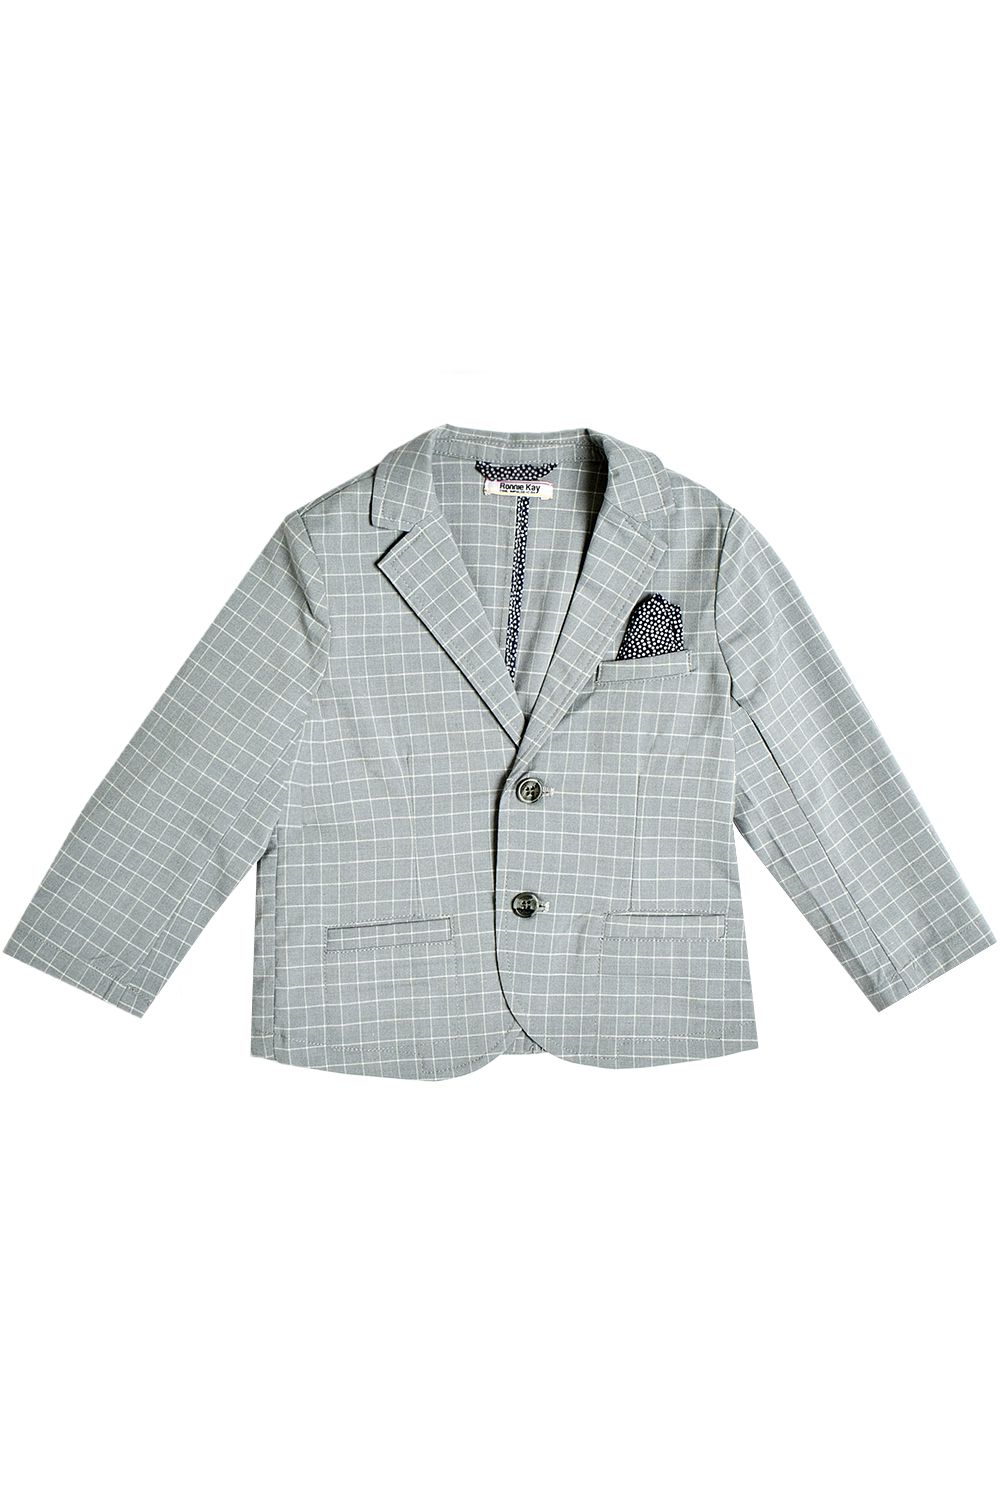 Пиджак Ronnie Kay, размер 86, цвет серый